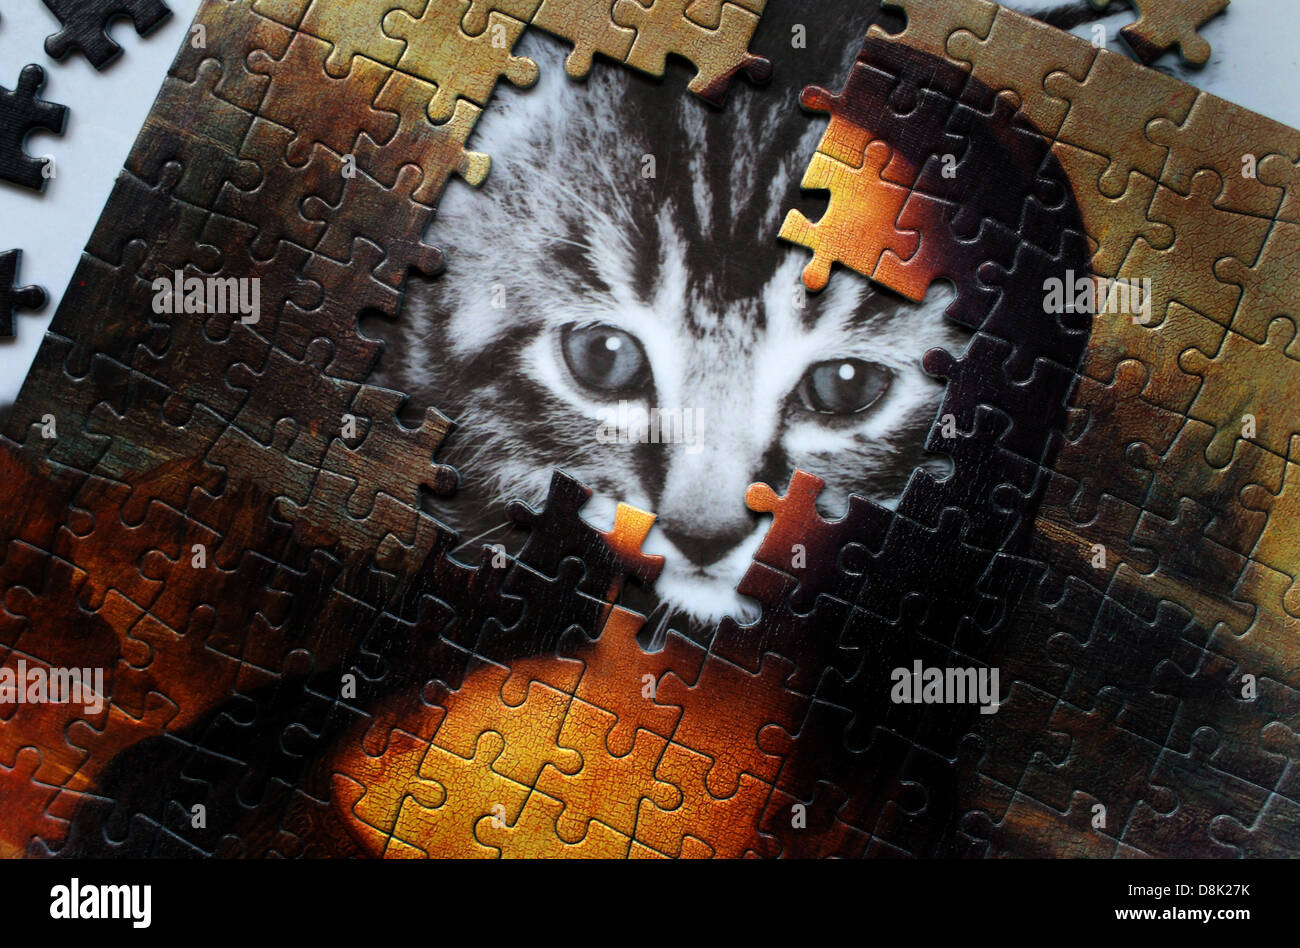 Ein Katzen-Gesicht wirkt durch einen unfertigen Mona Lisa-Puzzle. Die feline Gesicht ist Teil des Tee-Tablett unter dem Puzzle. Stockfoto